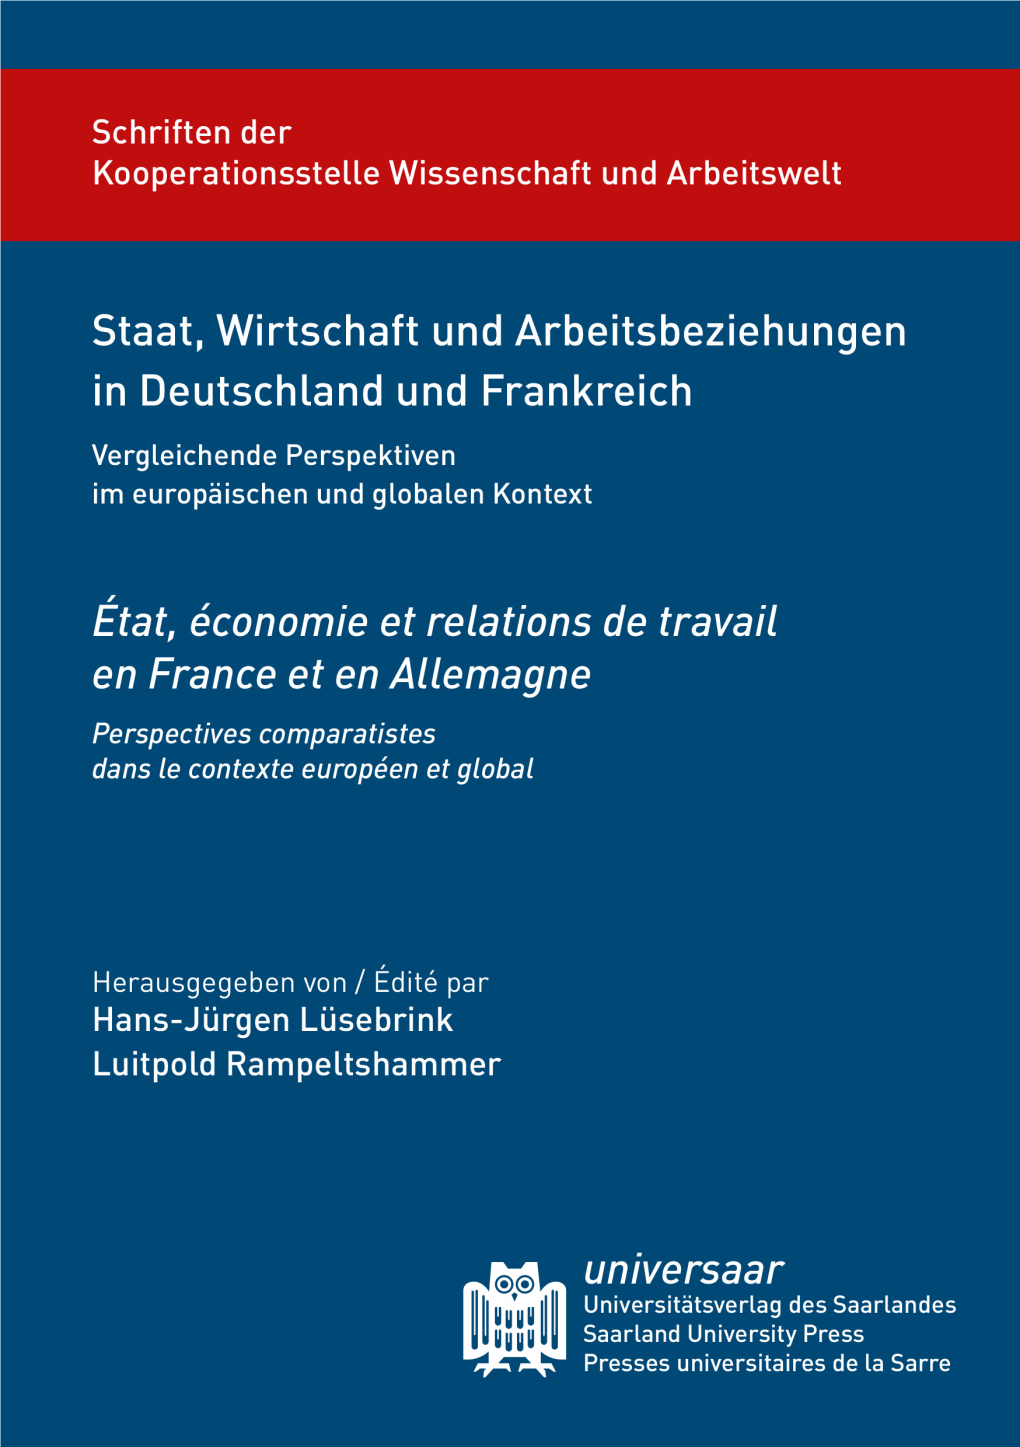 Staat, Wirtschaft Und Arbeitsbeziehungen in Deutschland Und Frankreich Unter Dem Einfluss Von Europäisierung Und Globalisierung“, Die Prof